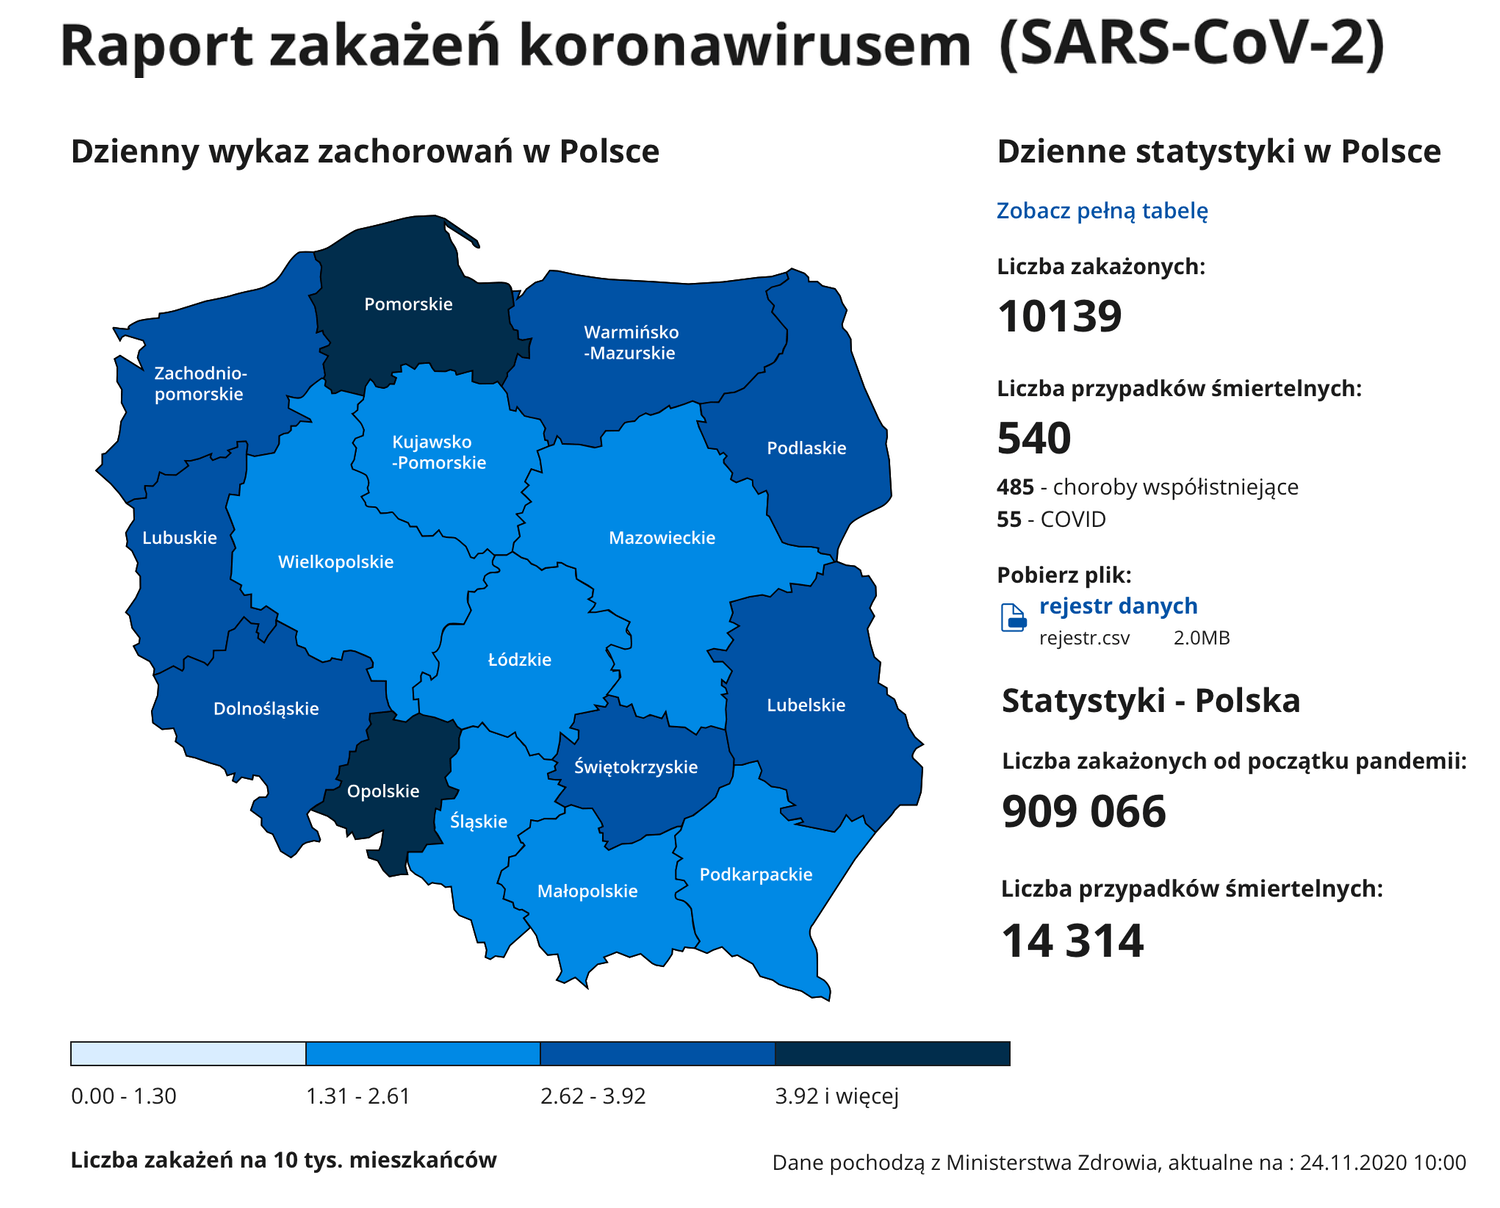 Raport zakażeń COVID-19 w Polsce (mapa z 24 listopada 2020 r.)